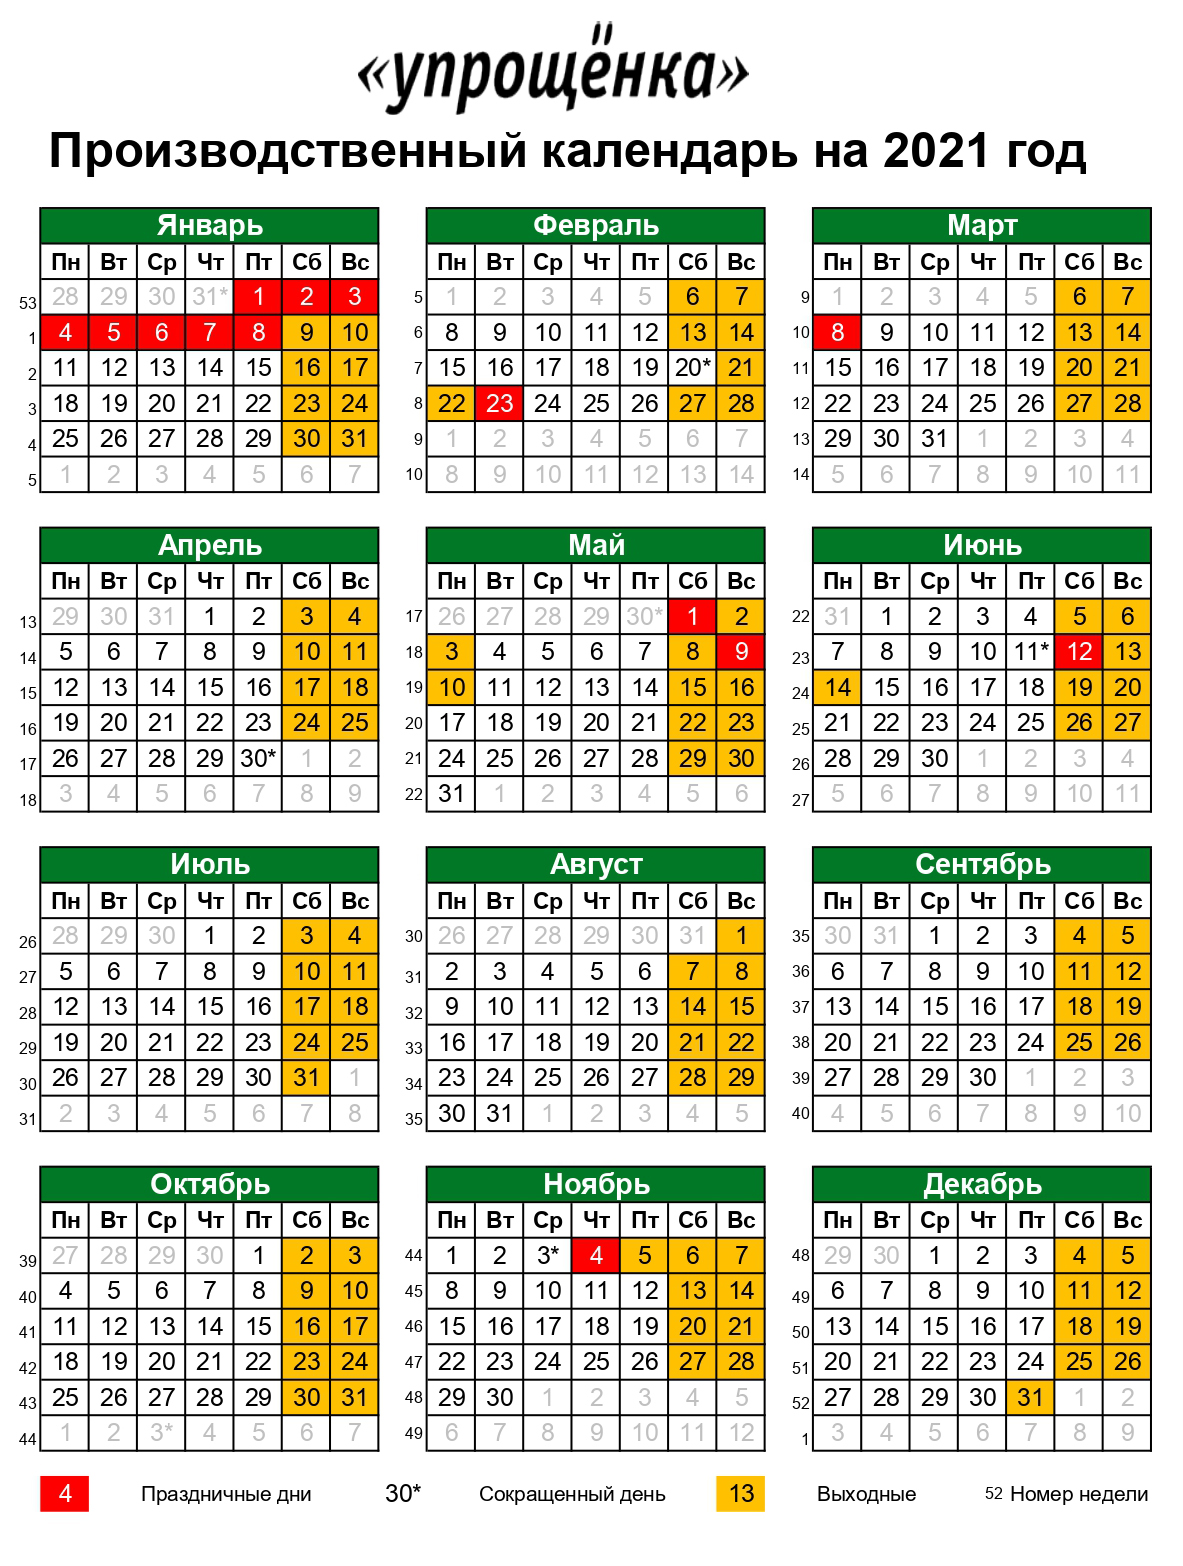 Производственный календарь на 2021 год выходные и праздники